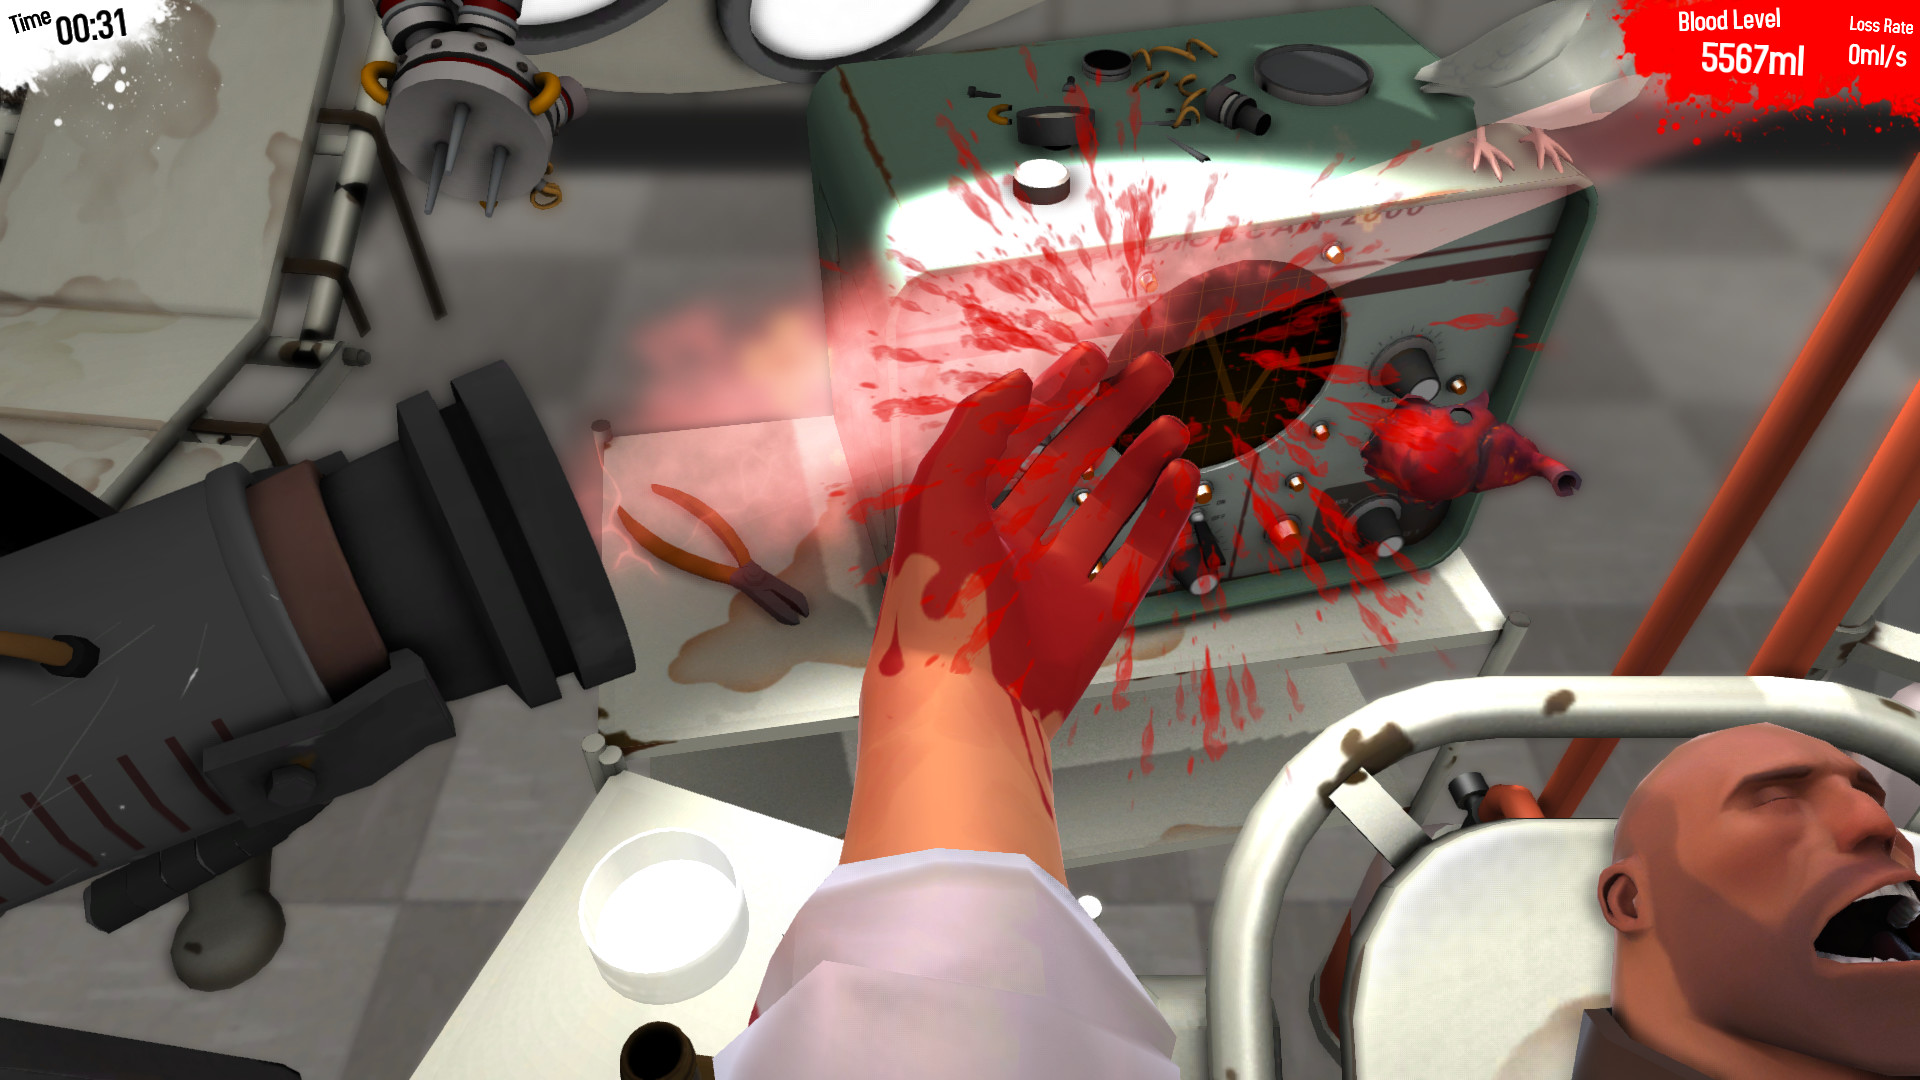 Save 75% on Surgeon Simulator on Steam